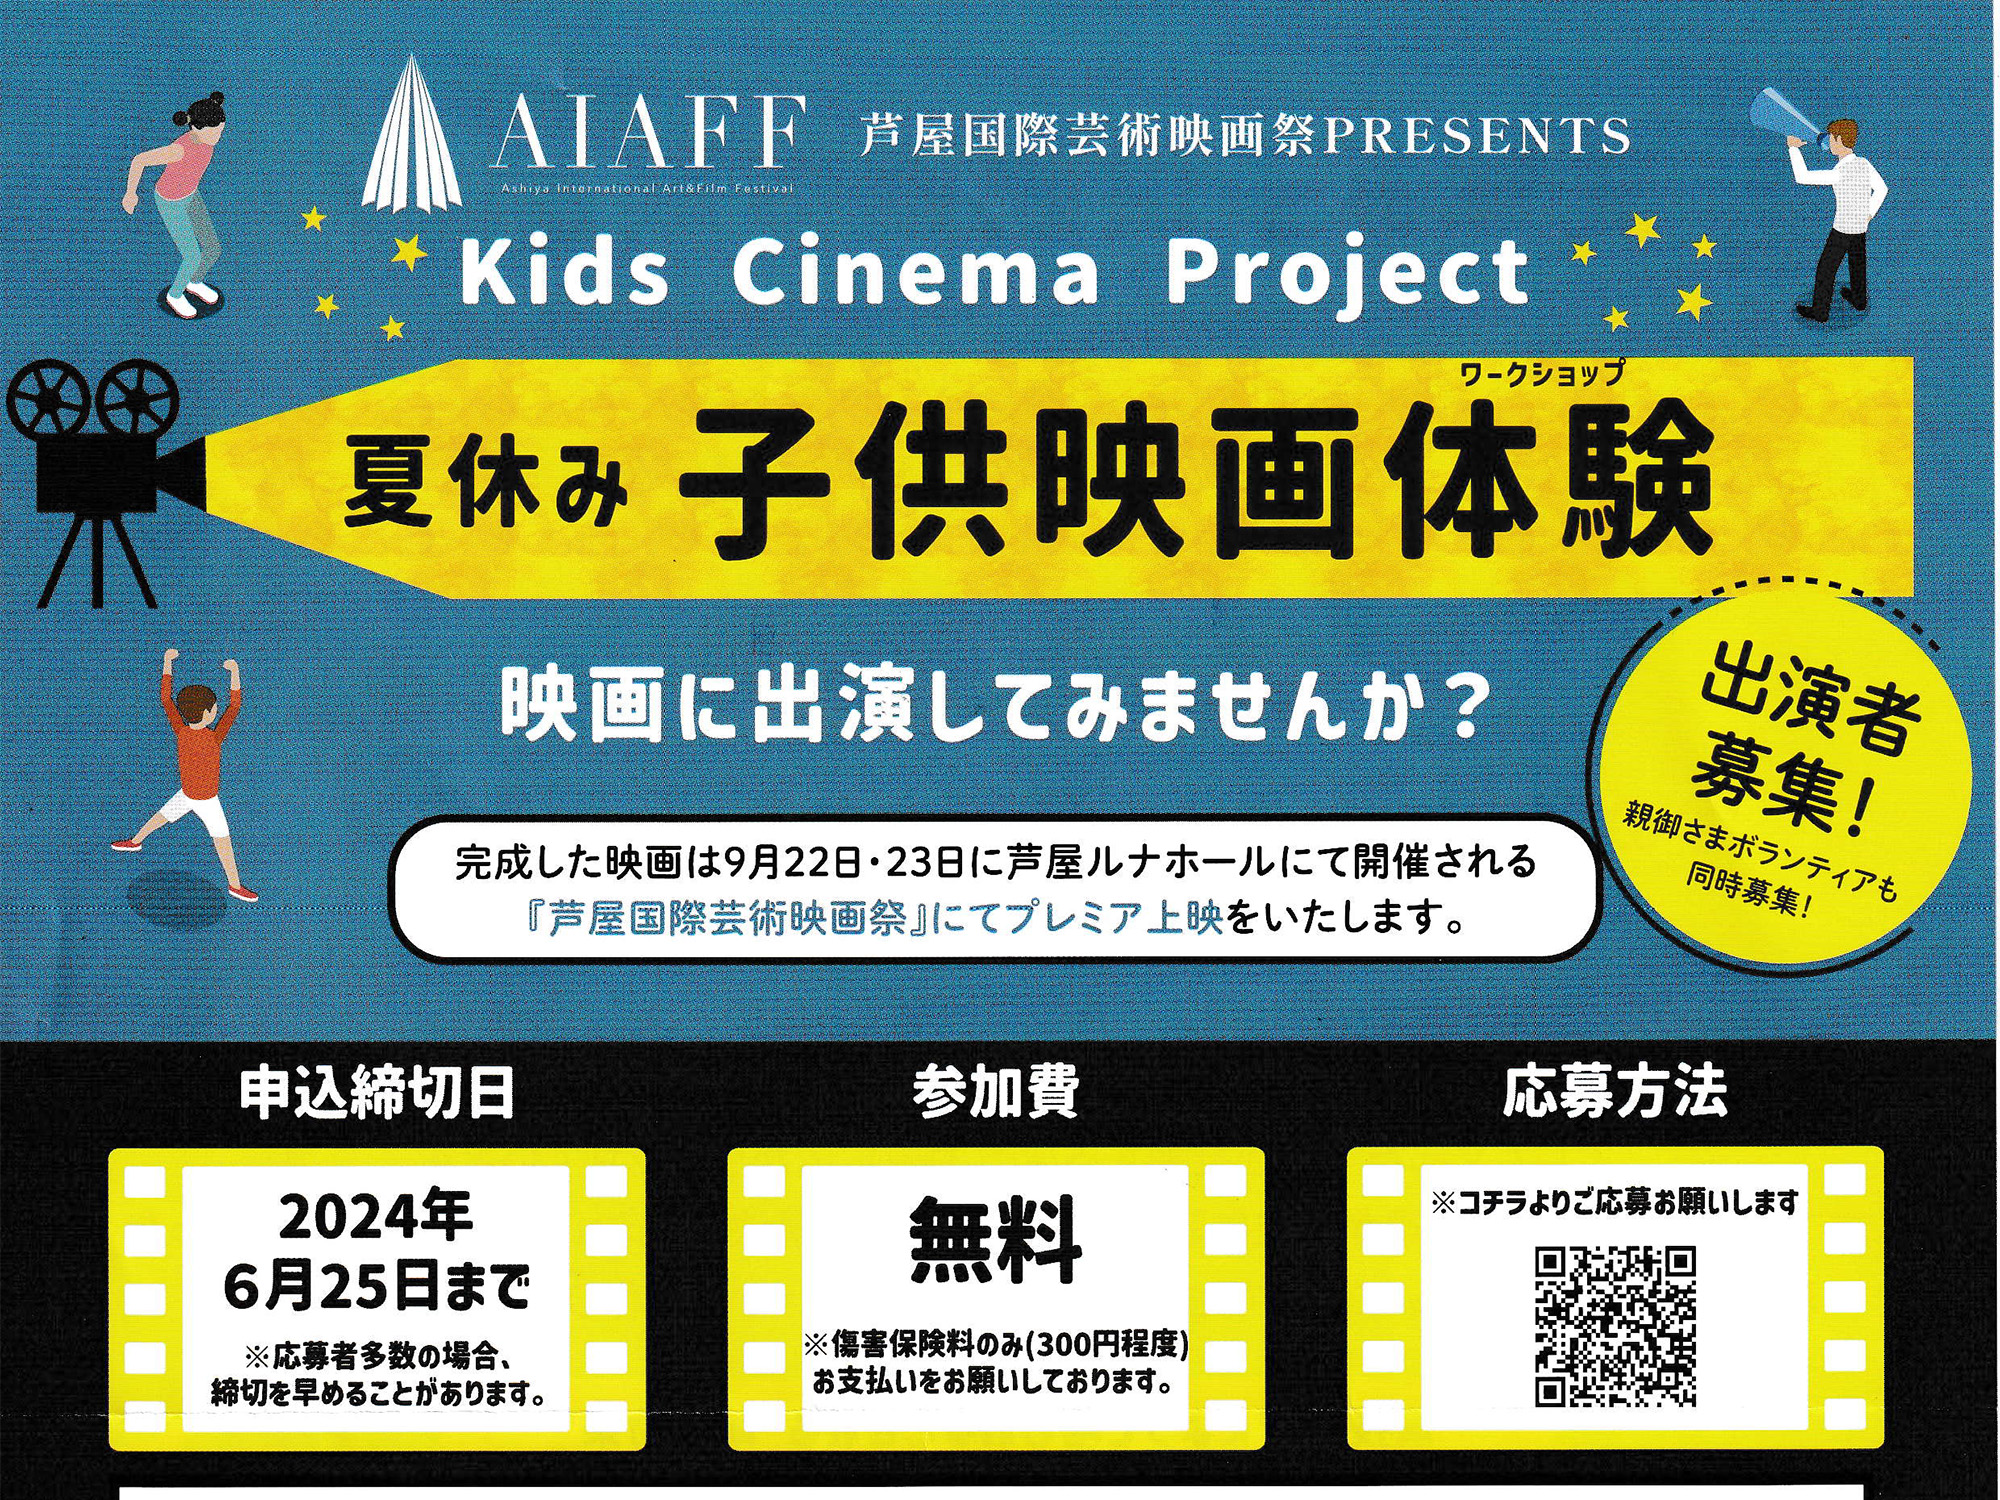 2024年6月25日まで 夏休み子供映画体験 芦屋国際芸術映画祭PRESENTSオーディション